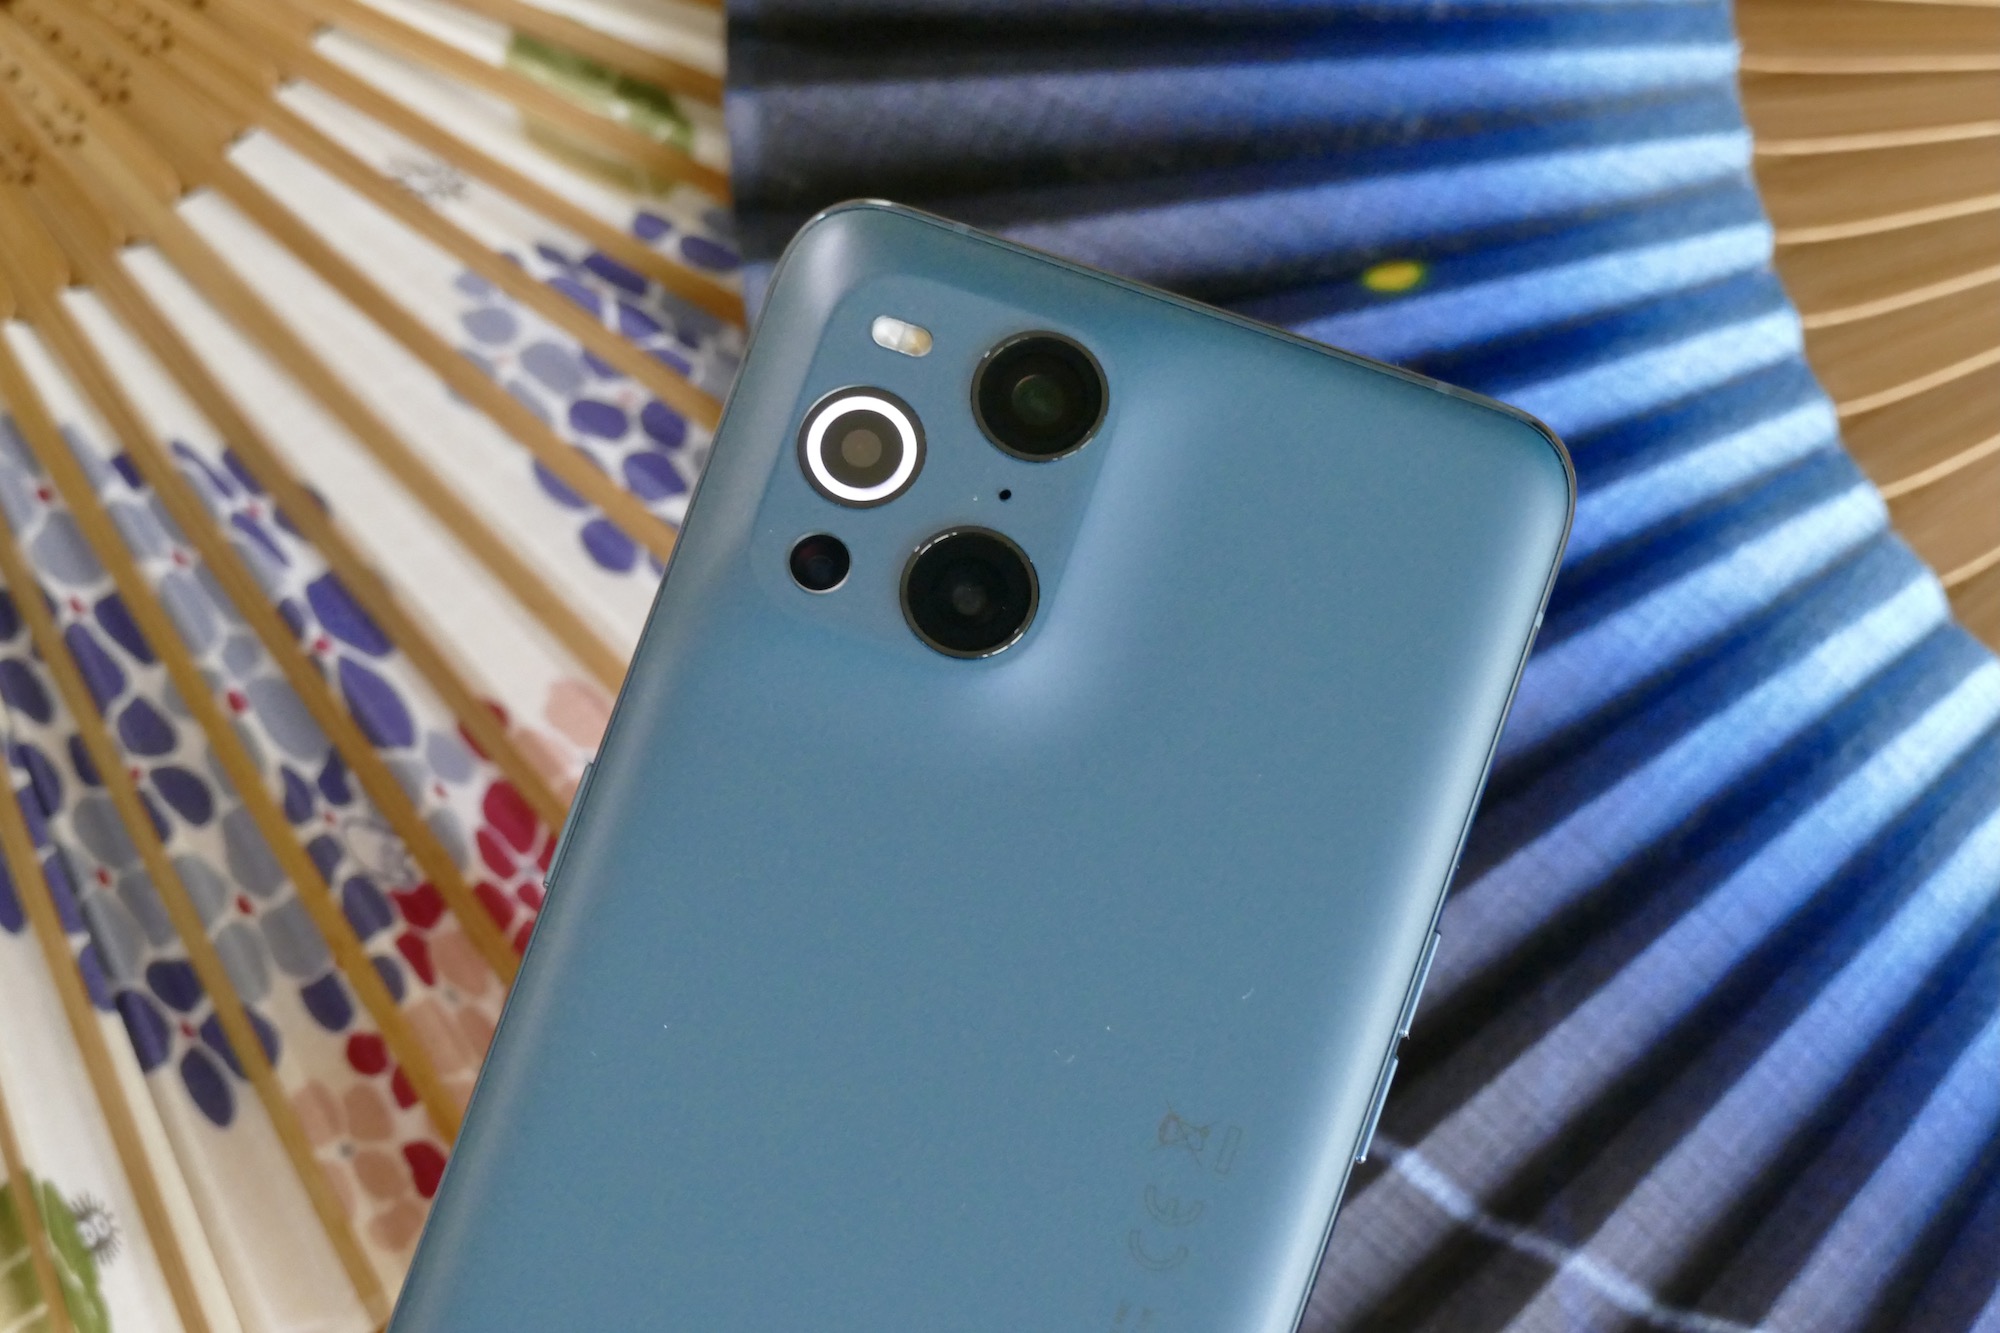 New Oppo smartphone has a 60x microscope camera